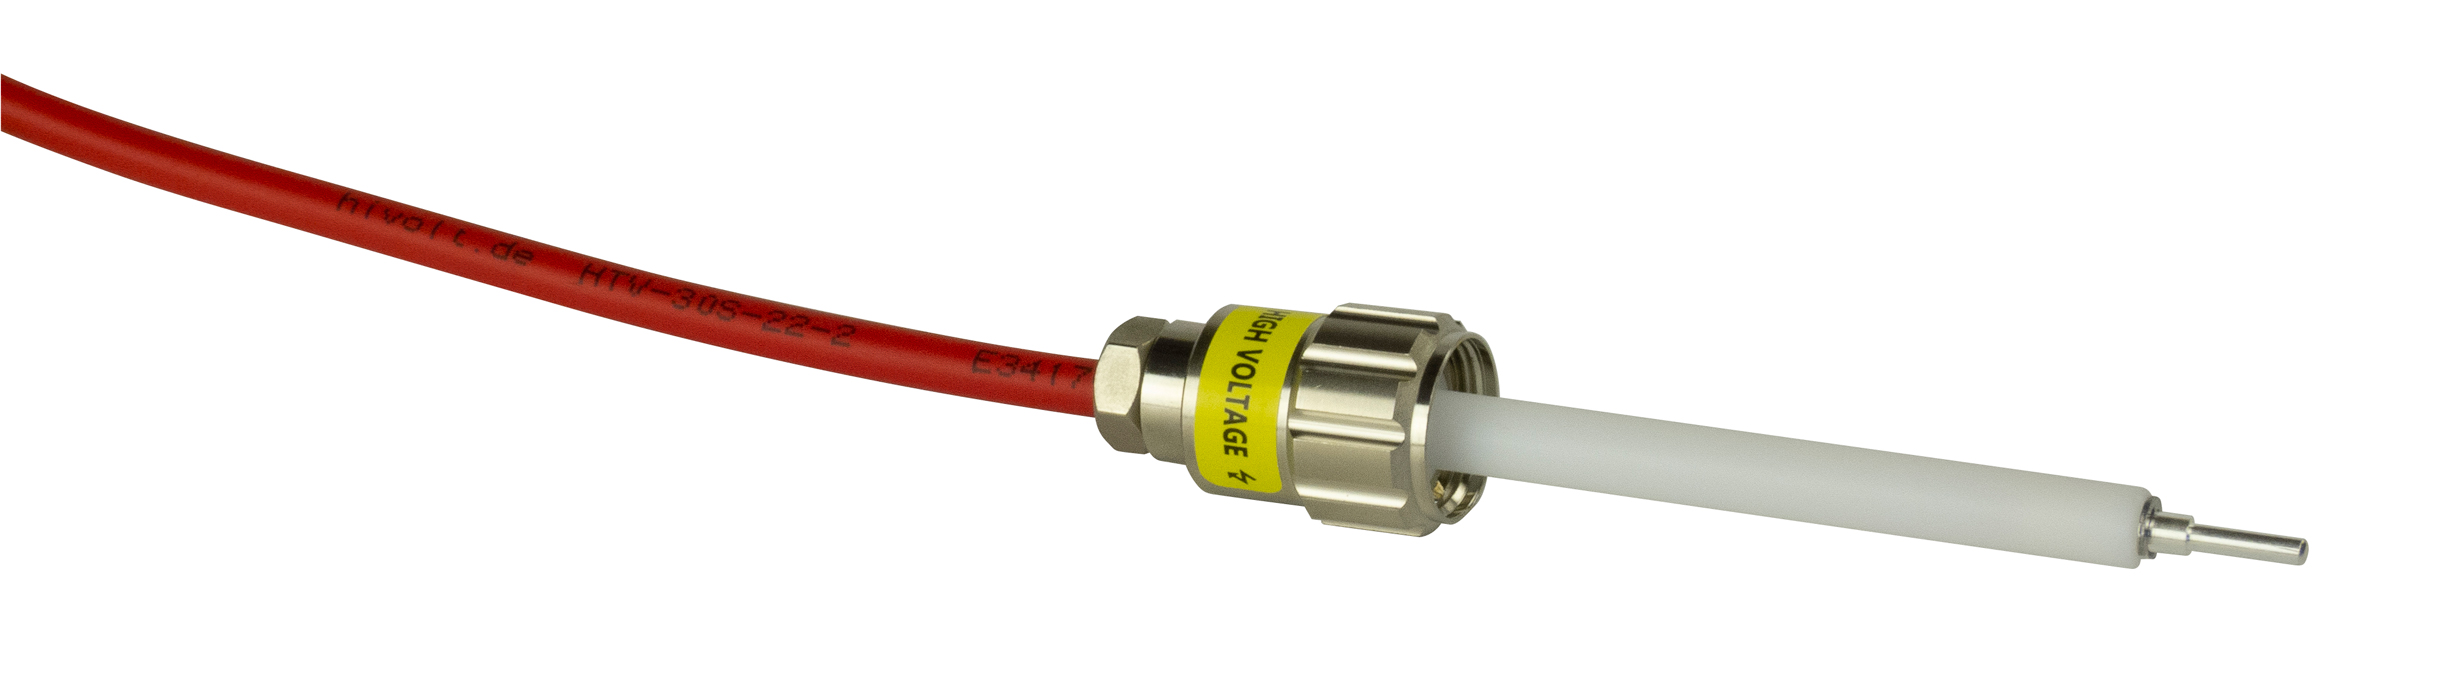 Connecteur haute tension GES serie HS-HB plug et socket